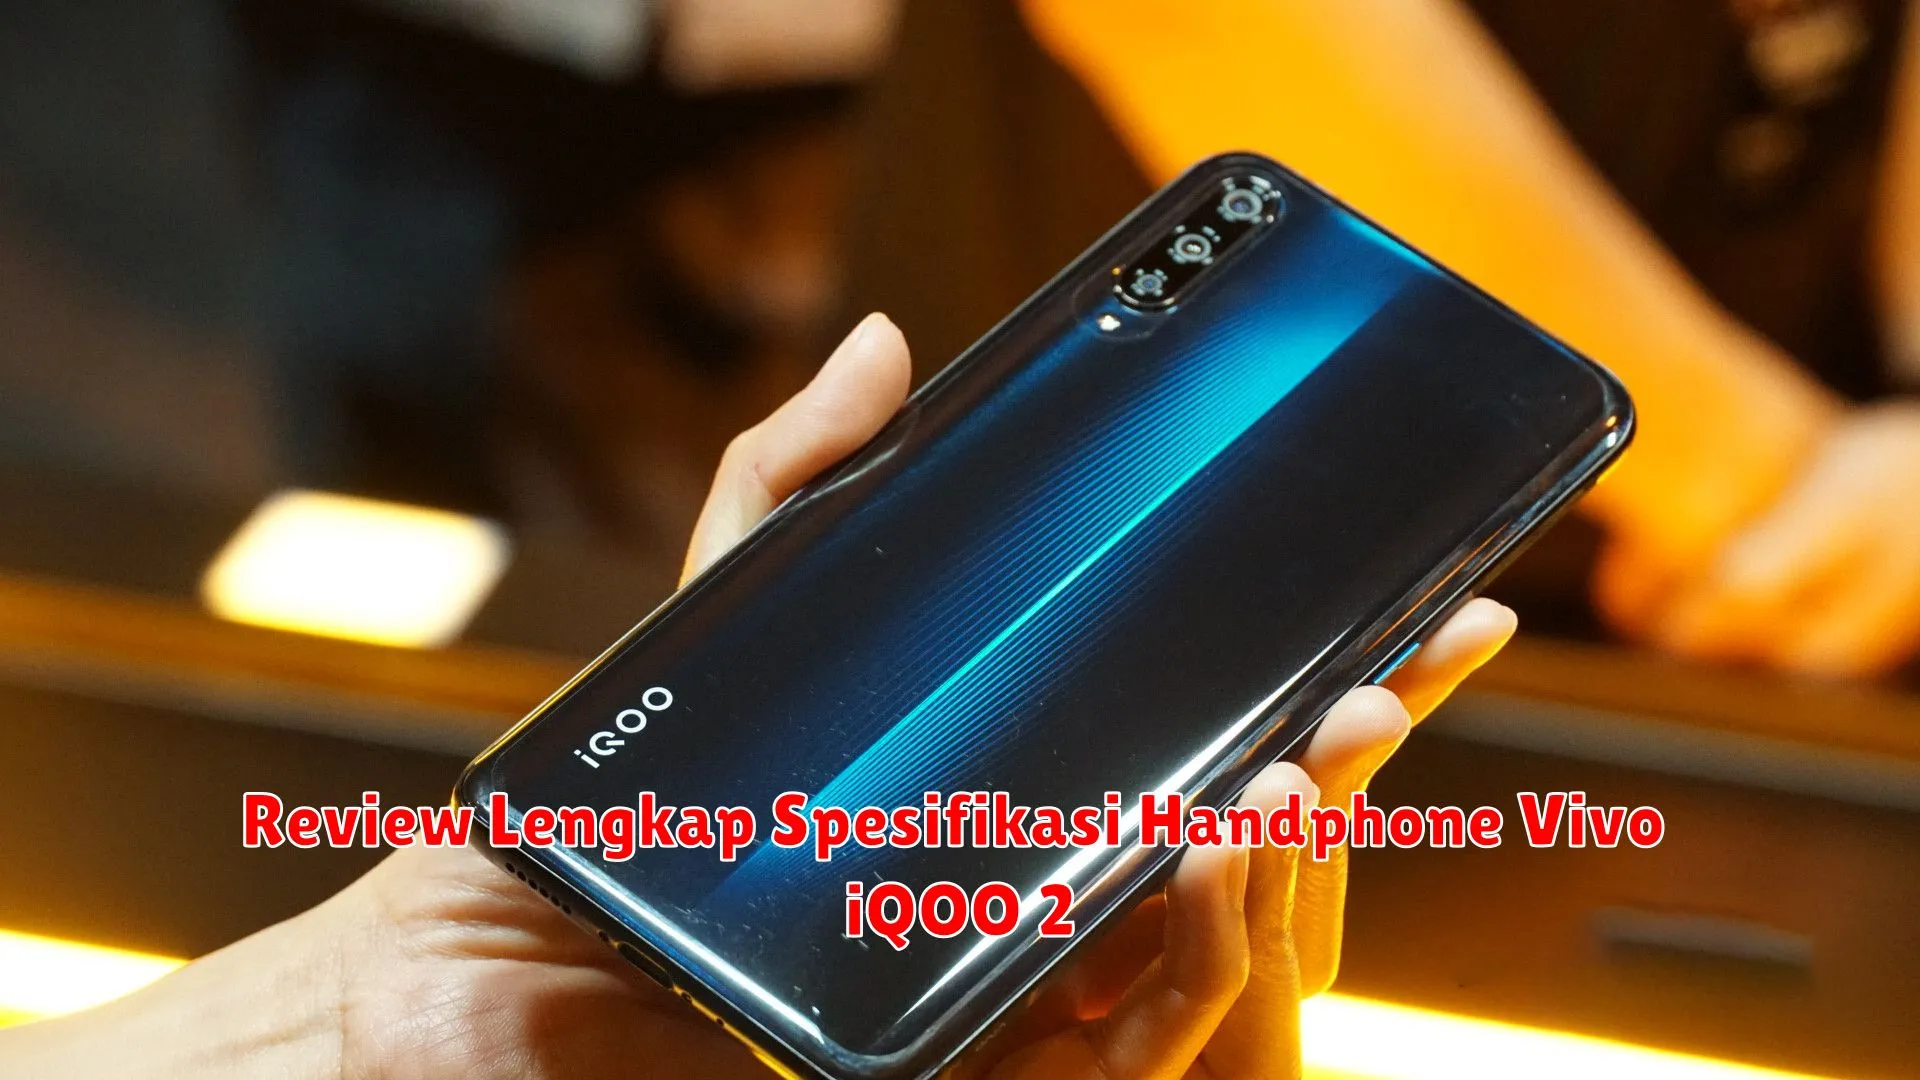 Review Lengkap Spesifikasi Handphone Vivo iQOO 2